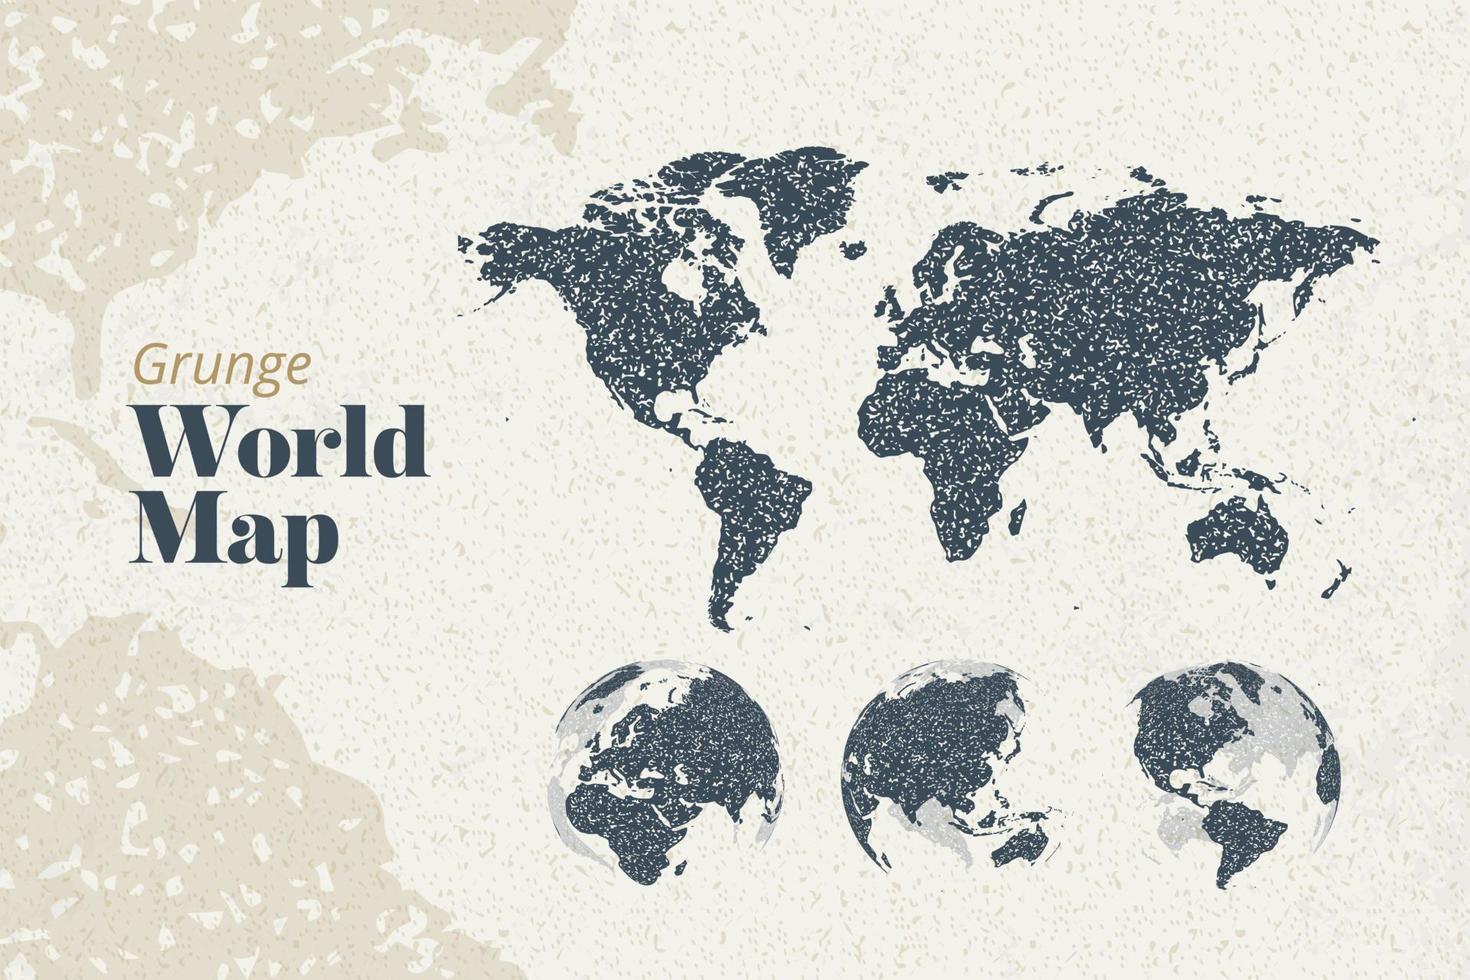 grunge wereldkaart en earth globes met alle continenten. vector illustratie sjabloon voor webdesign, jaarverslagen, infographics, bedrijfspresentatie, marketing, reizen en toerisme.